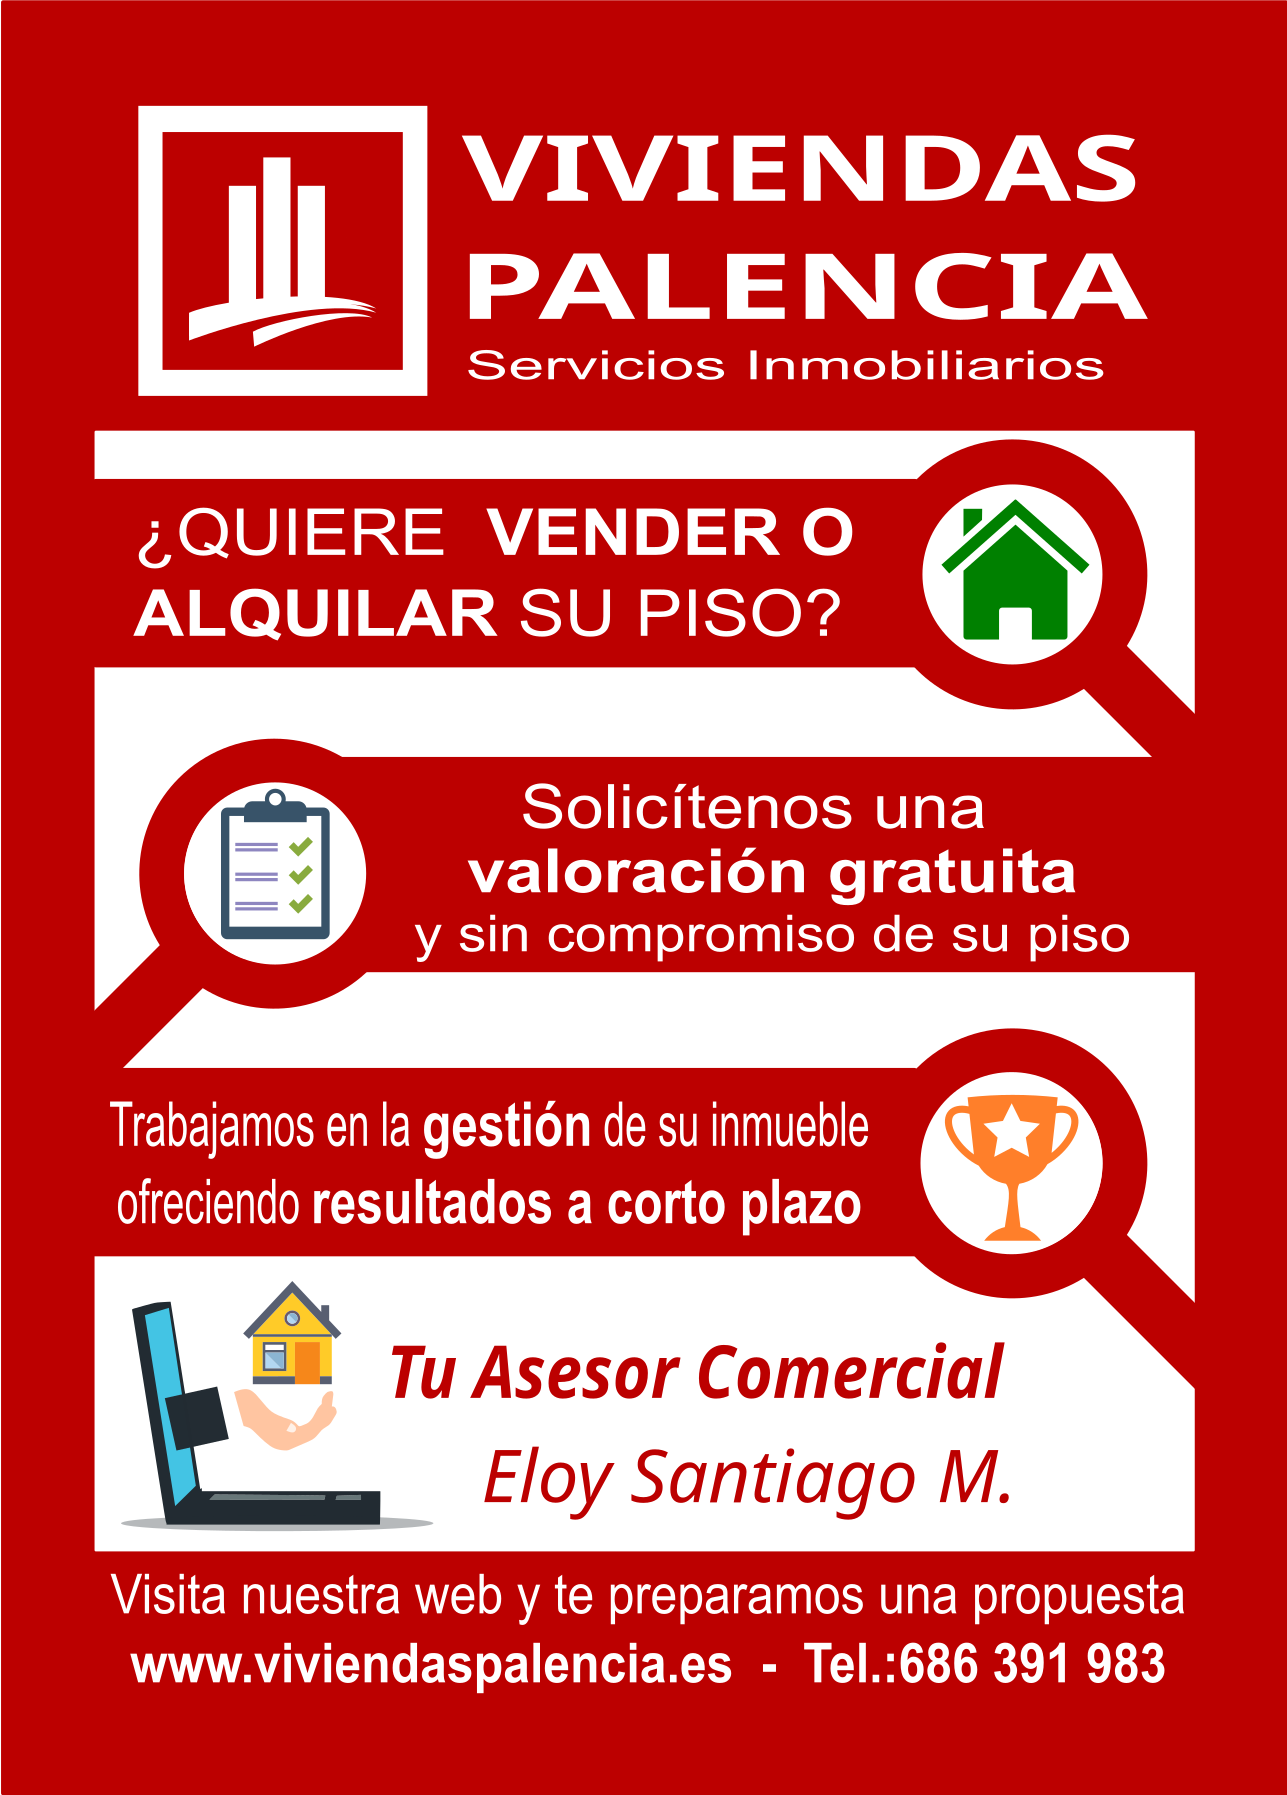 Images Asesoría Inmobiliaria Viviendas Palencia